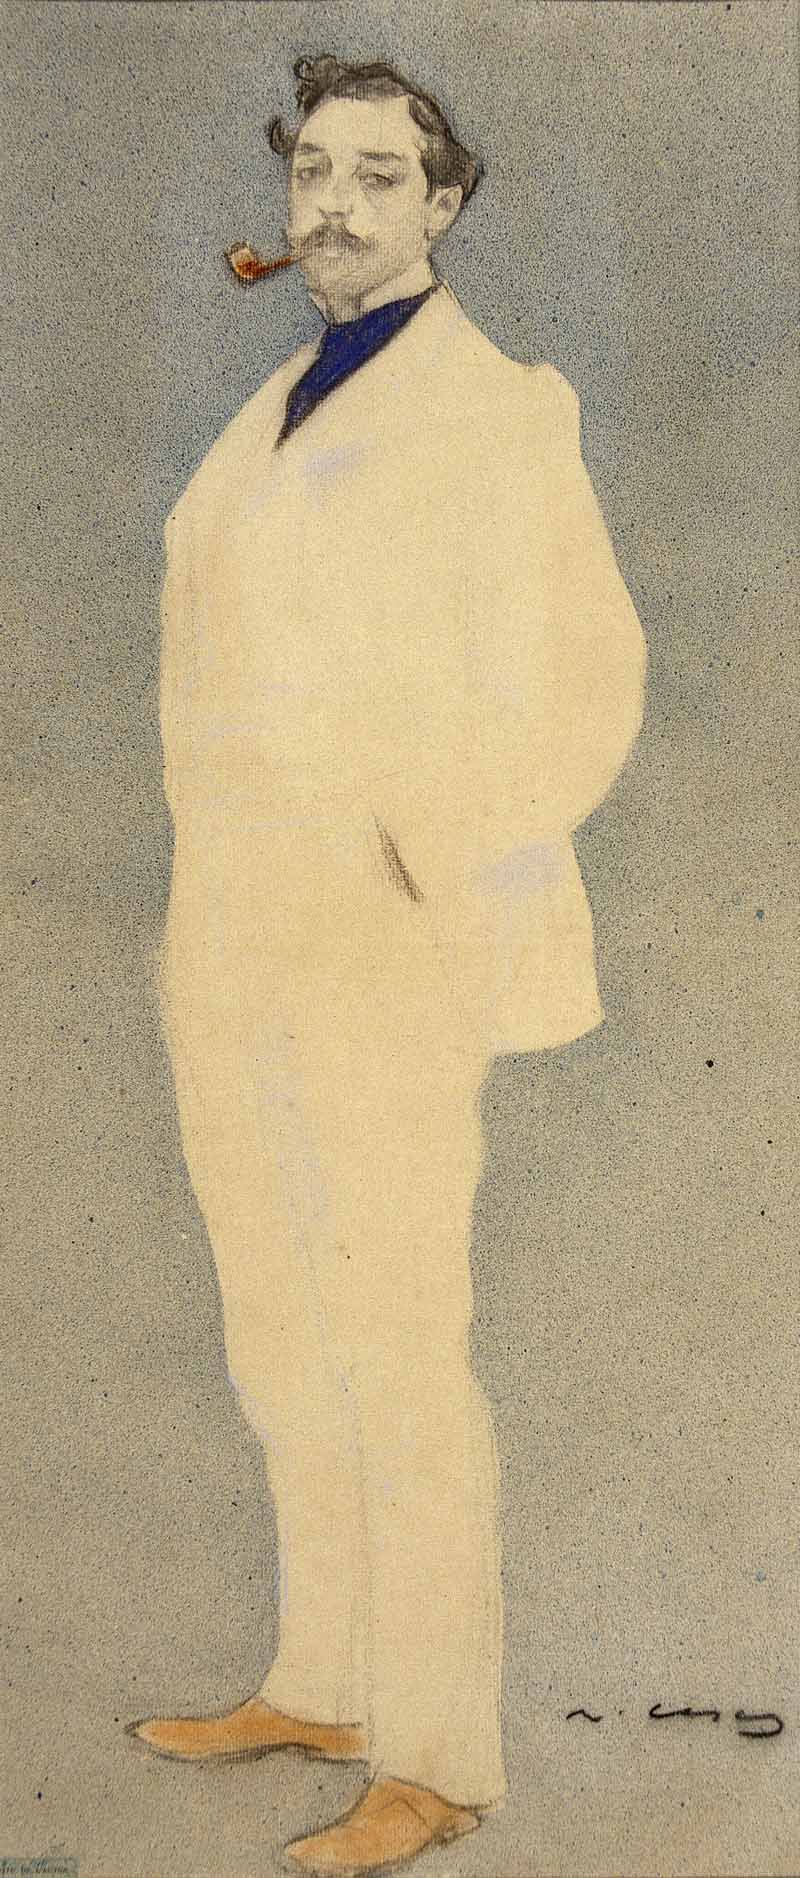 Portrait of Antoni Utrillo, Ramon Casas